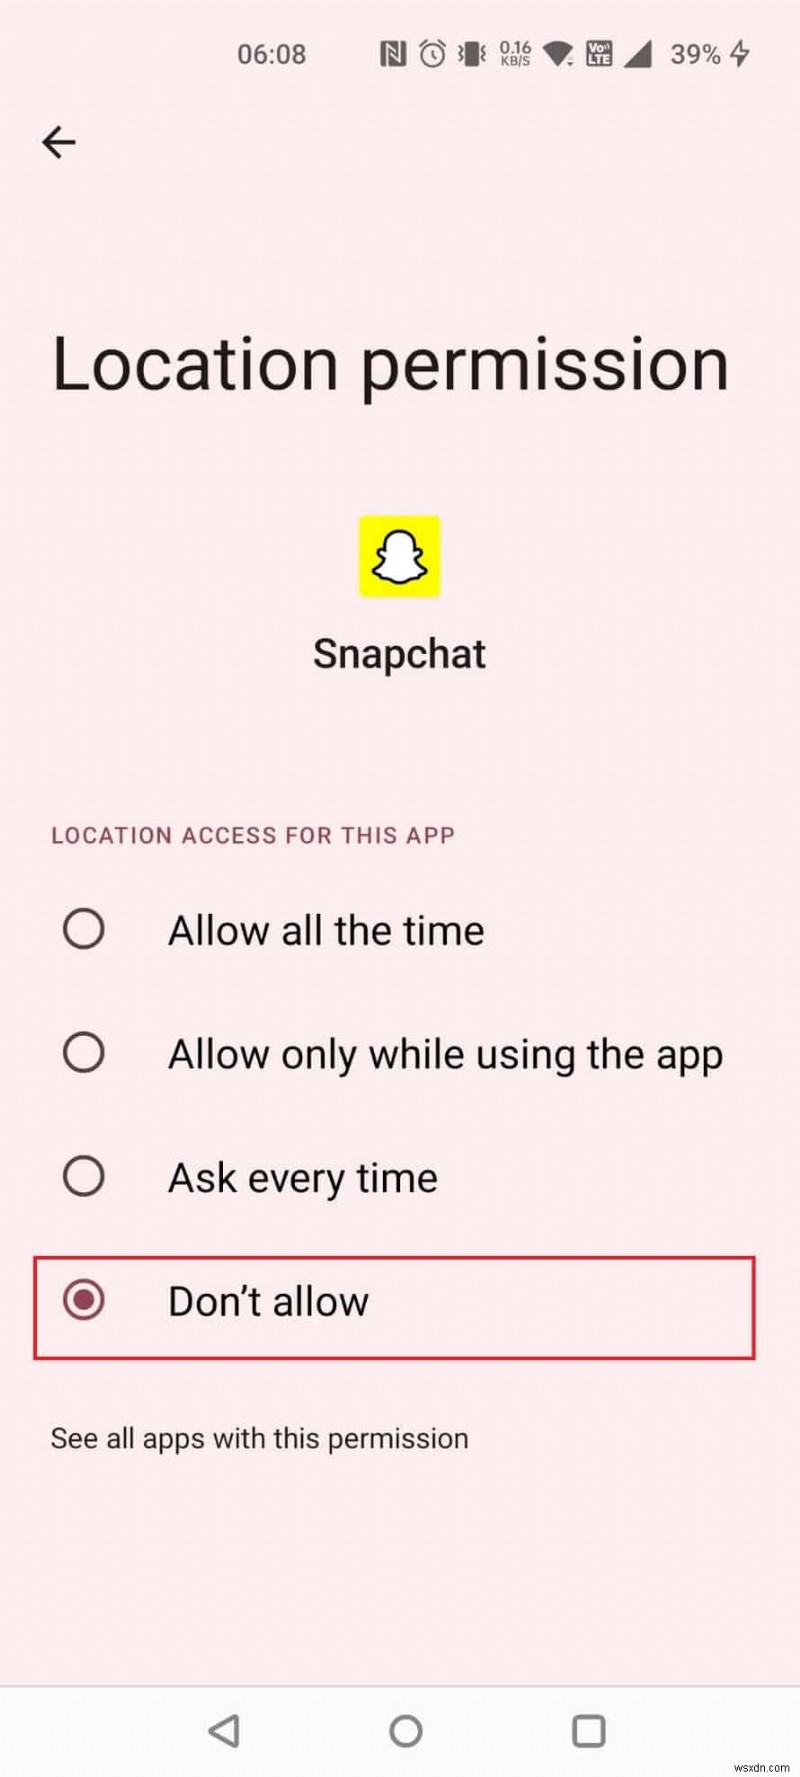 สามารถติดตาม Snapchat ได้หรือไม่